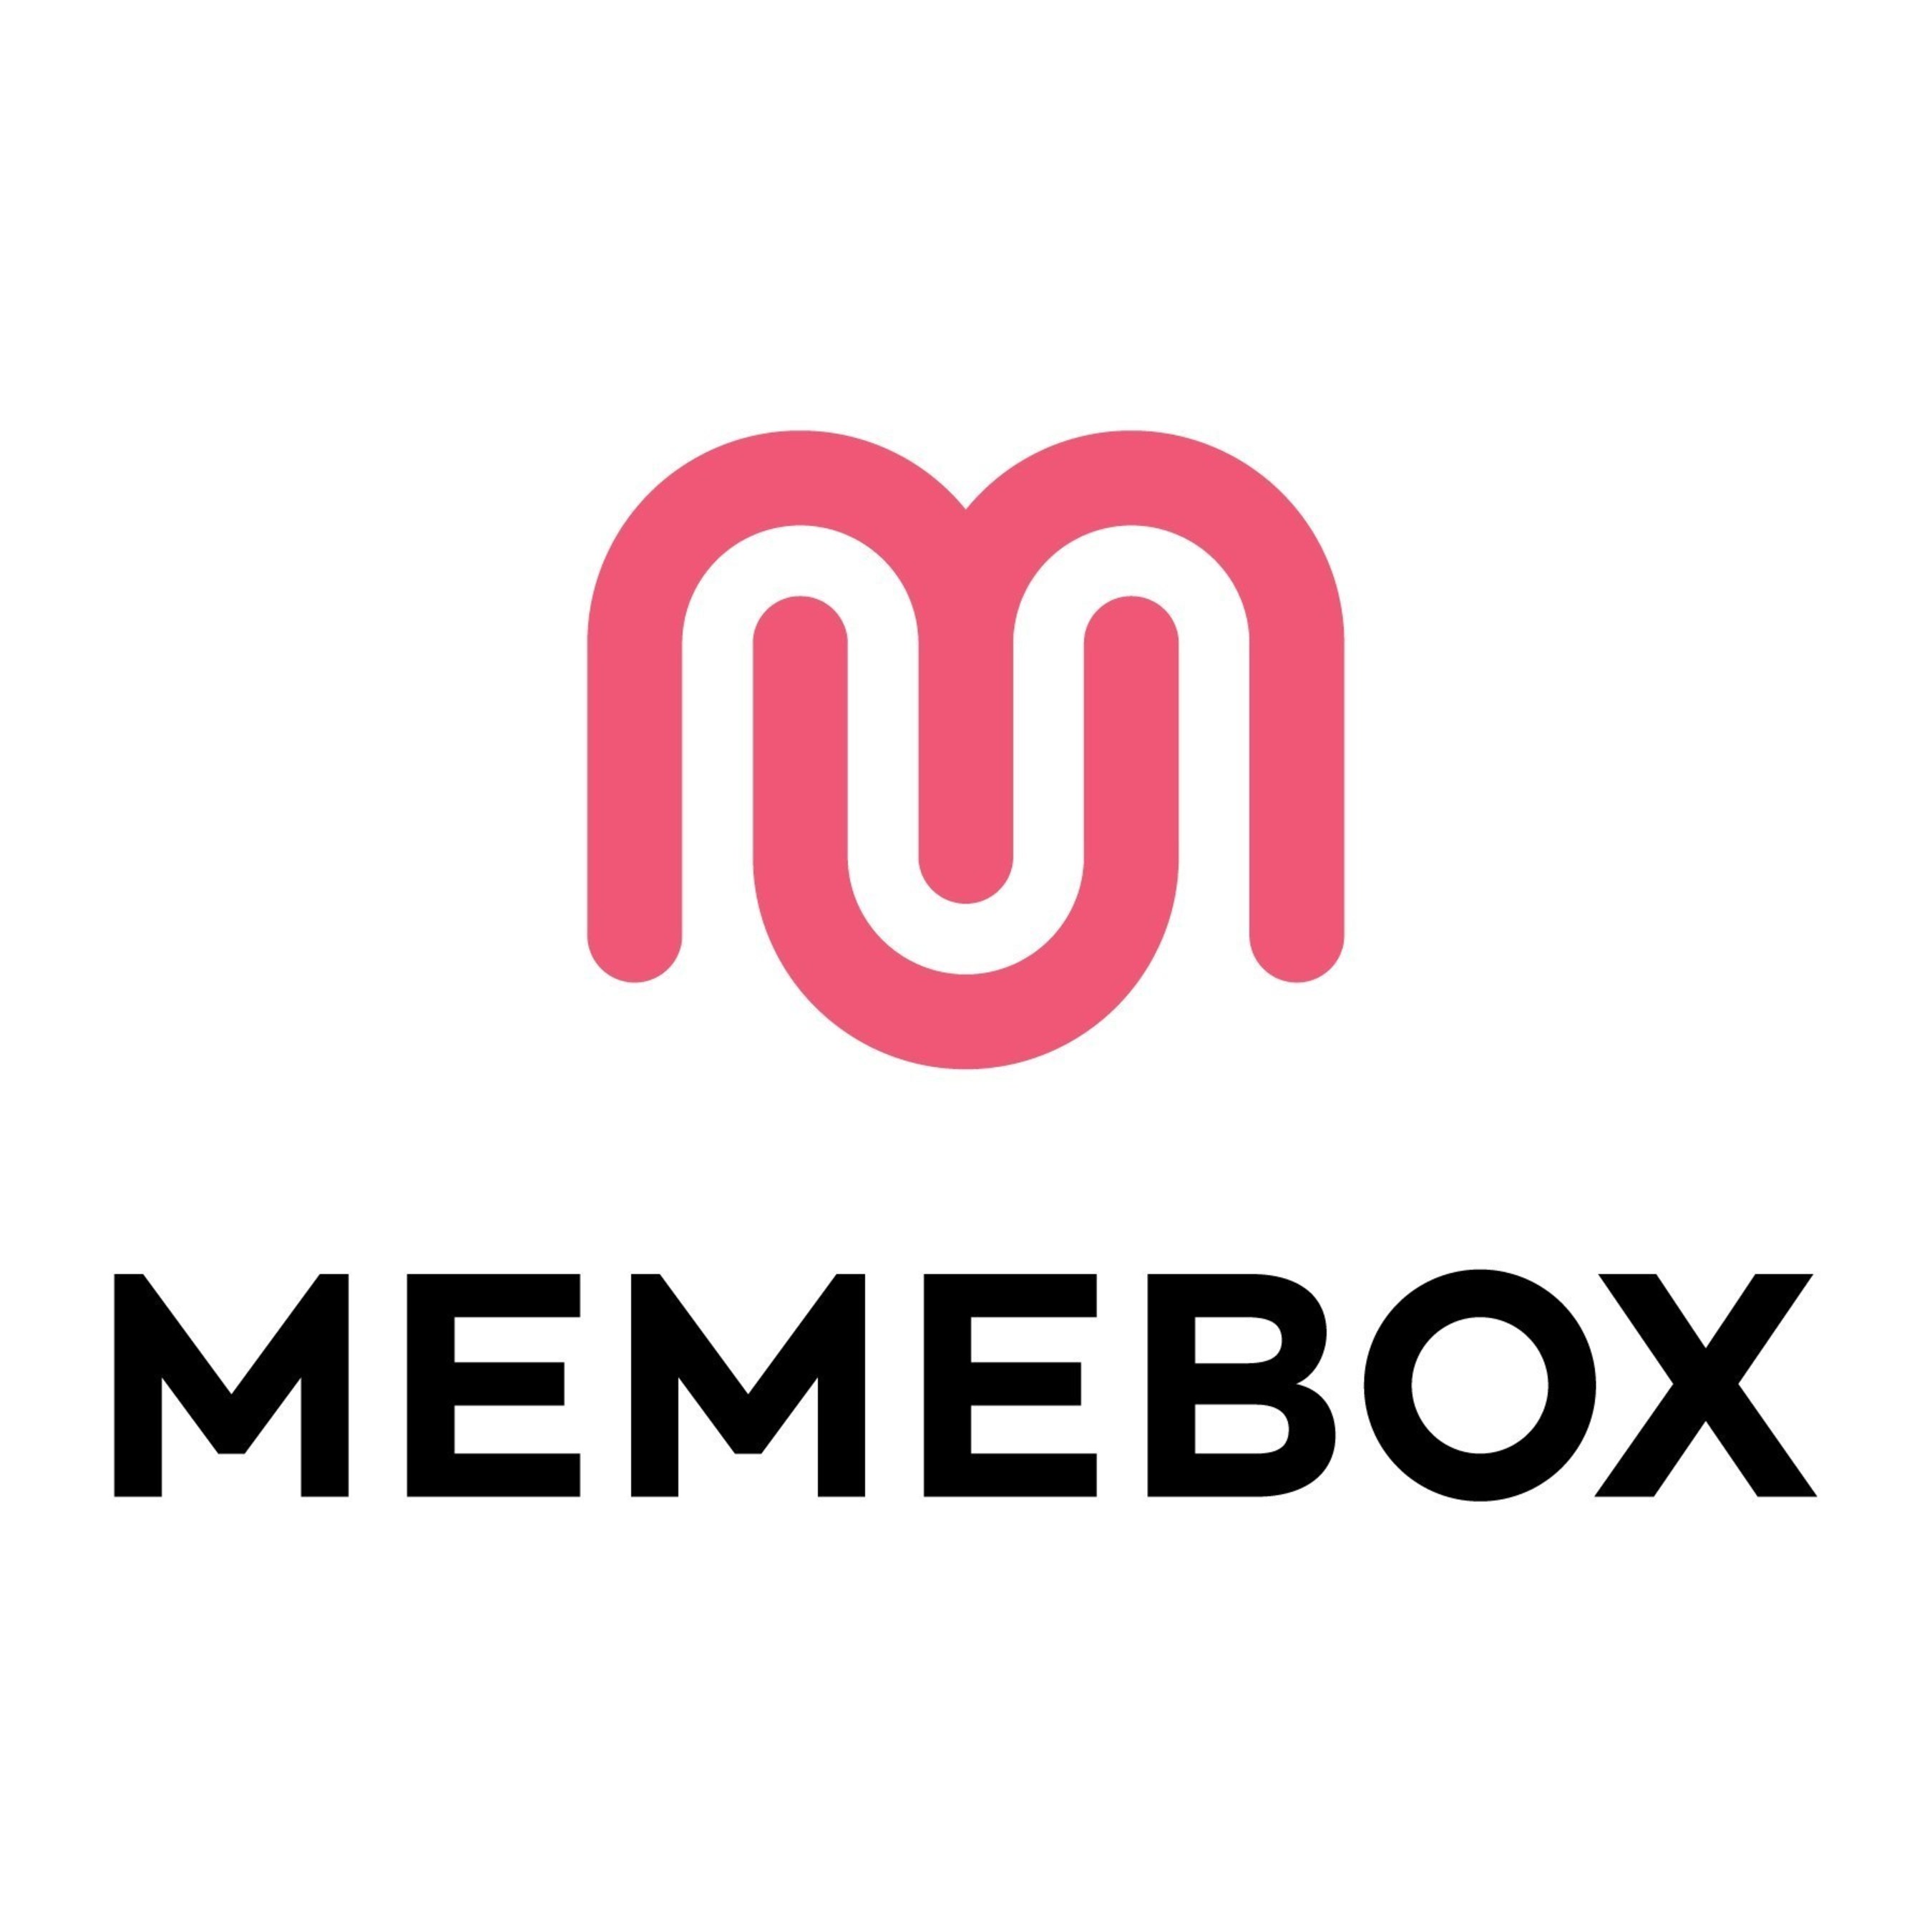 Memebox, the fastest growing beauty brand in the world (www.memebox.com)